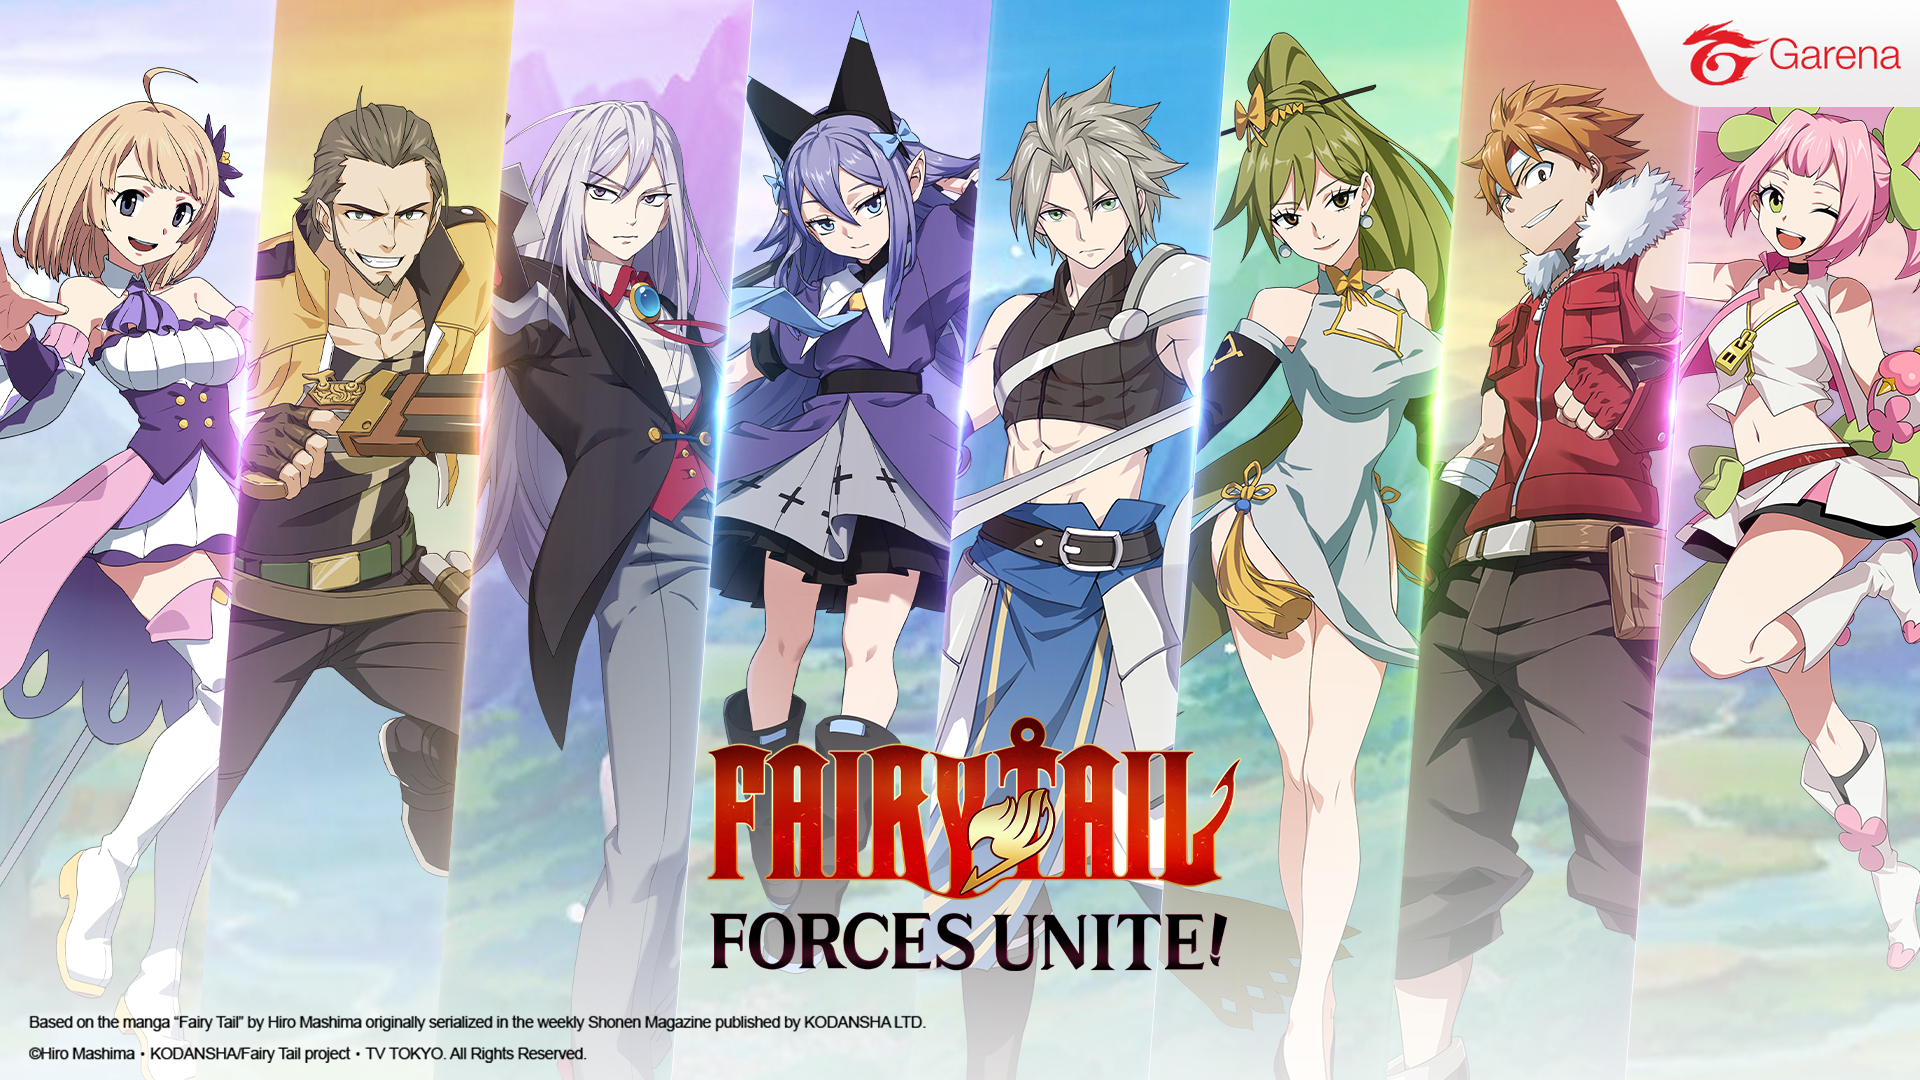 เกมผจญภัยมือถือ FAIRY TAIL: Forces Unite! เปิดให้บริการแล้ววันนี้